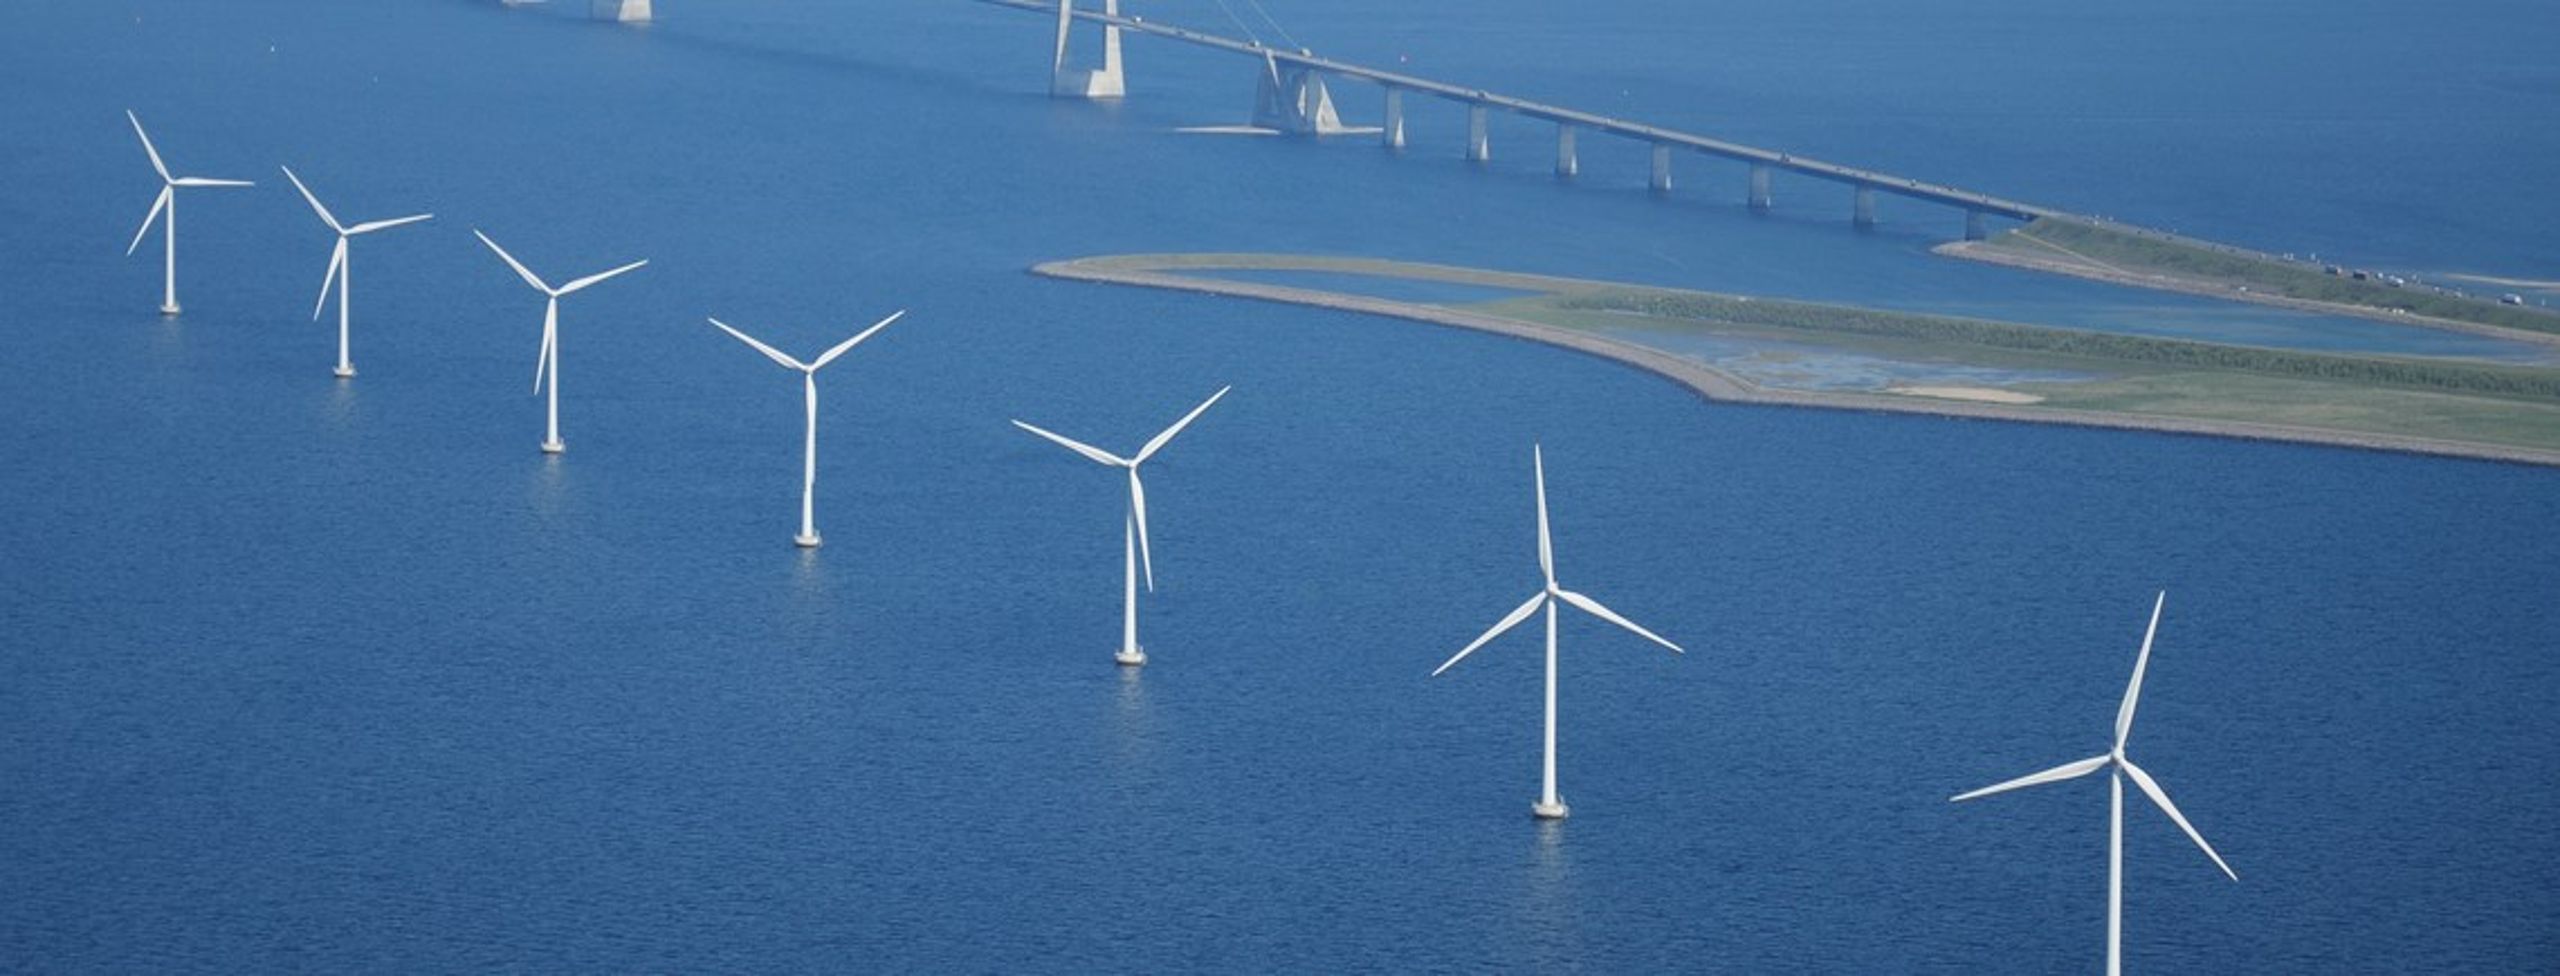 Klima- og energiminister Lars Christian Lilleholt vil give kommunerne bedre mulighed for at blokere kystnære vindmøller.